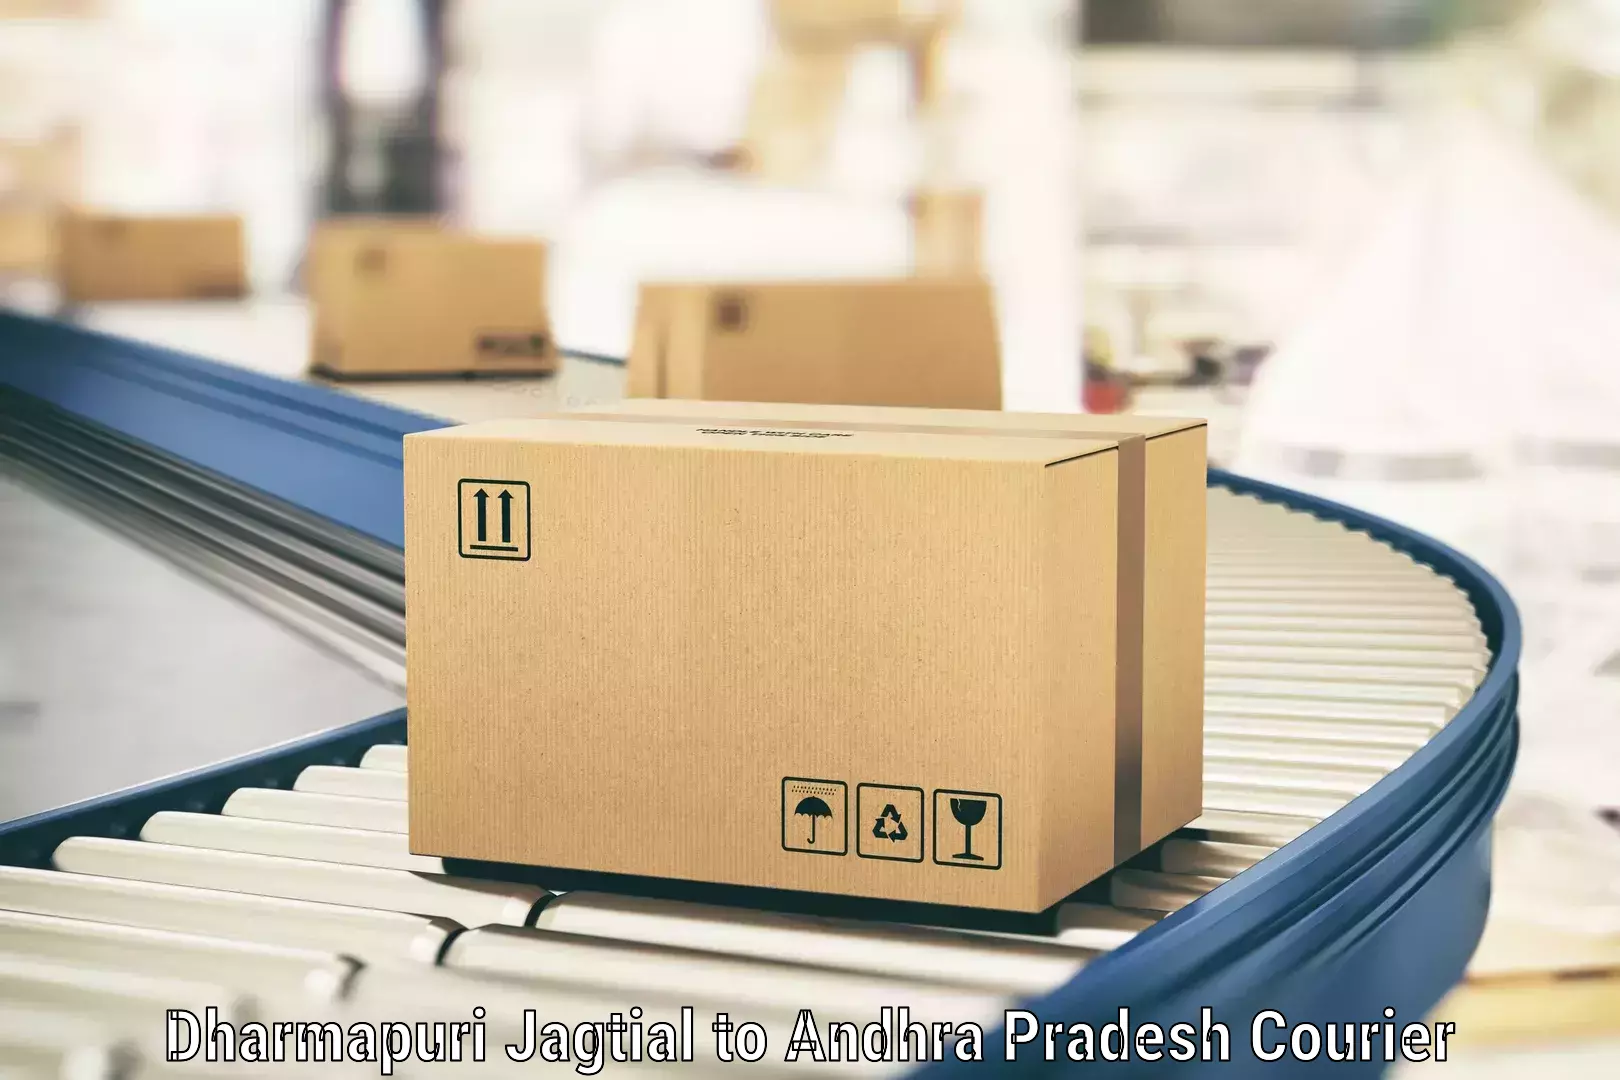 Large package courier Dharmapuri Jagtial to Bhimadole